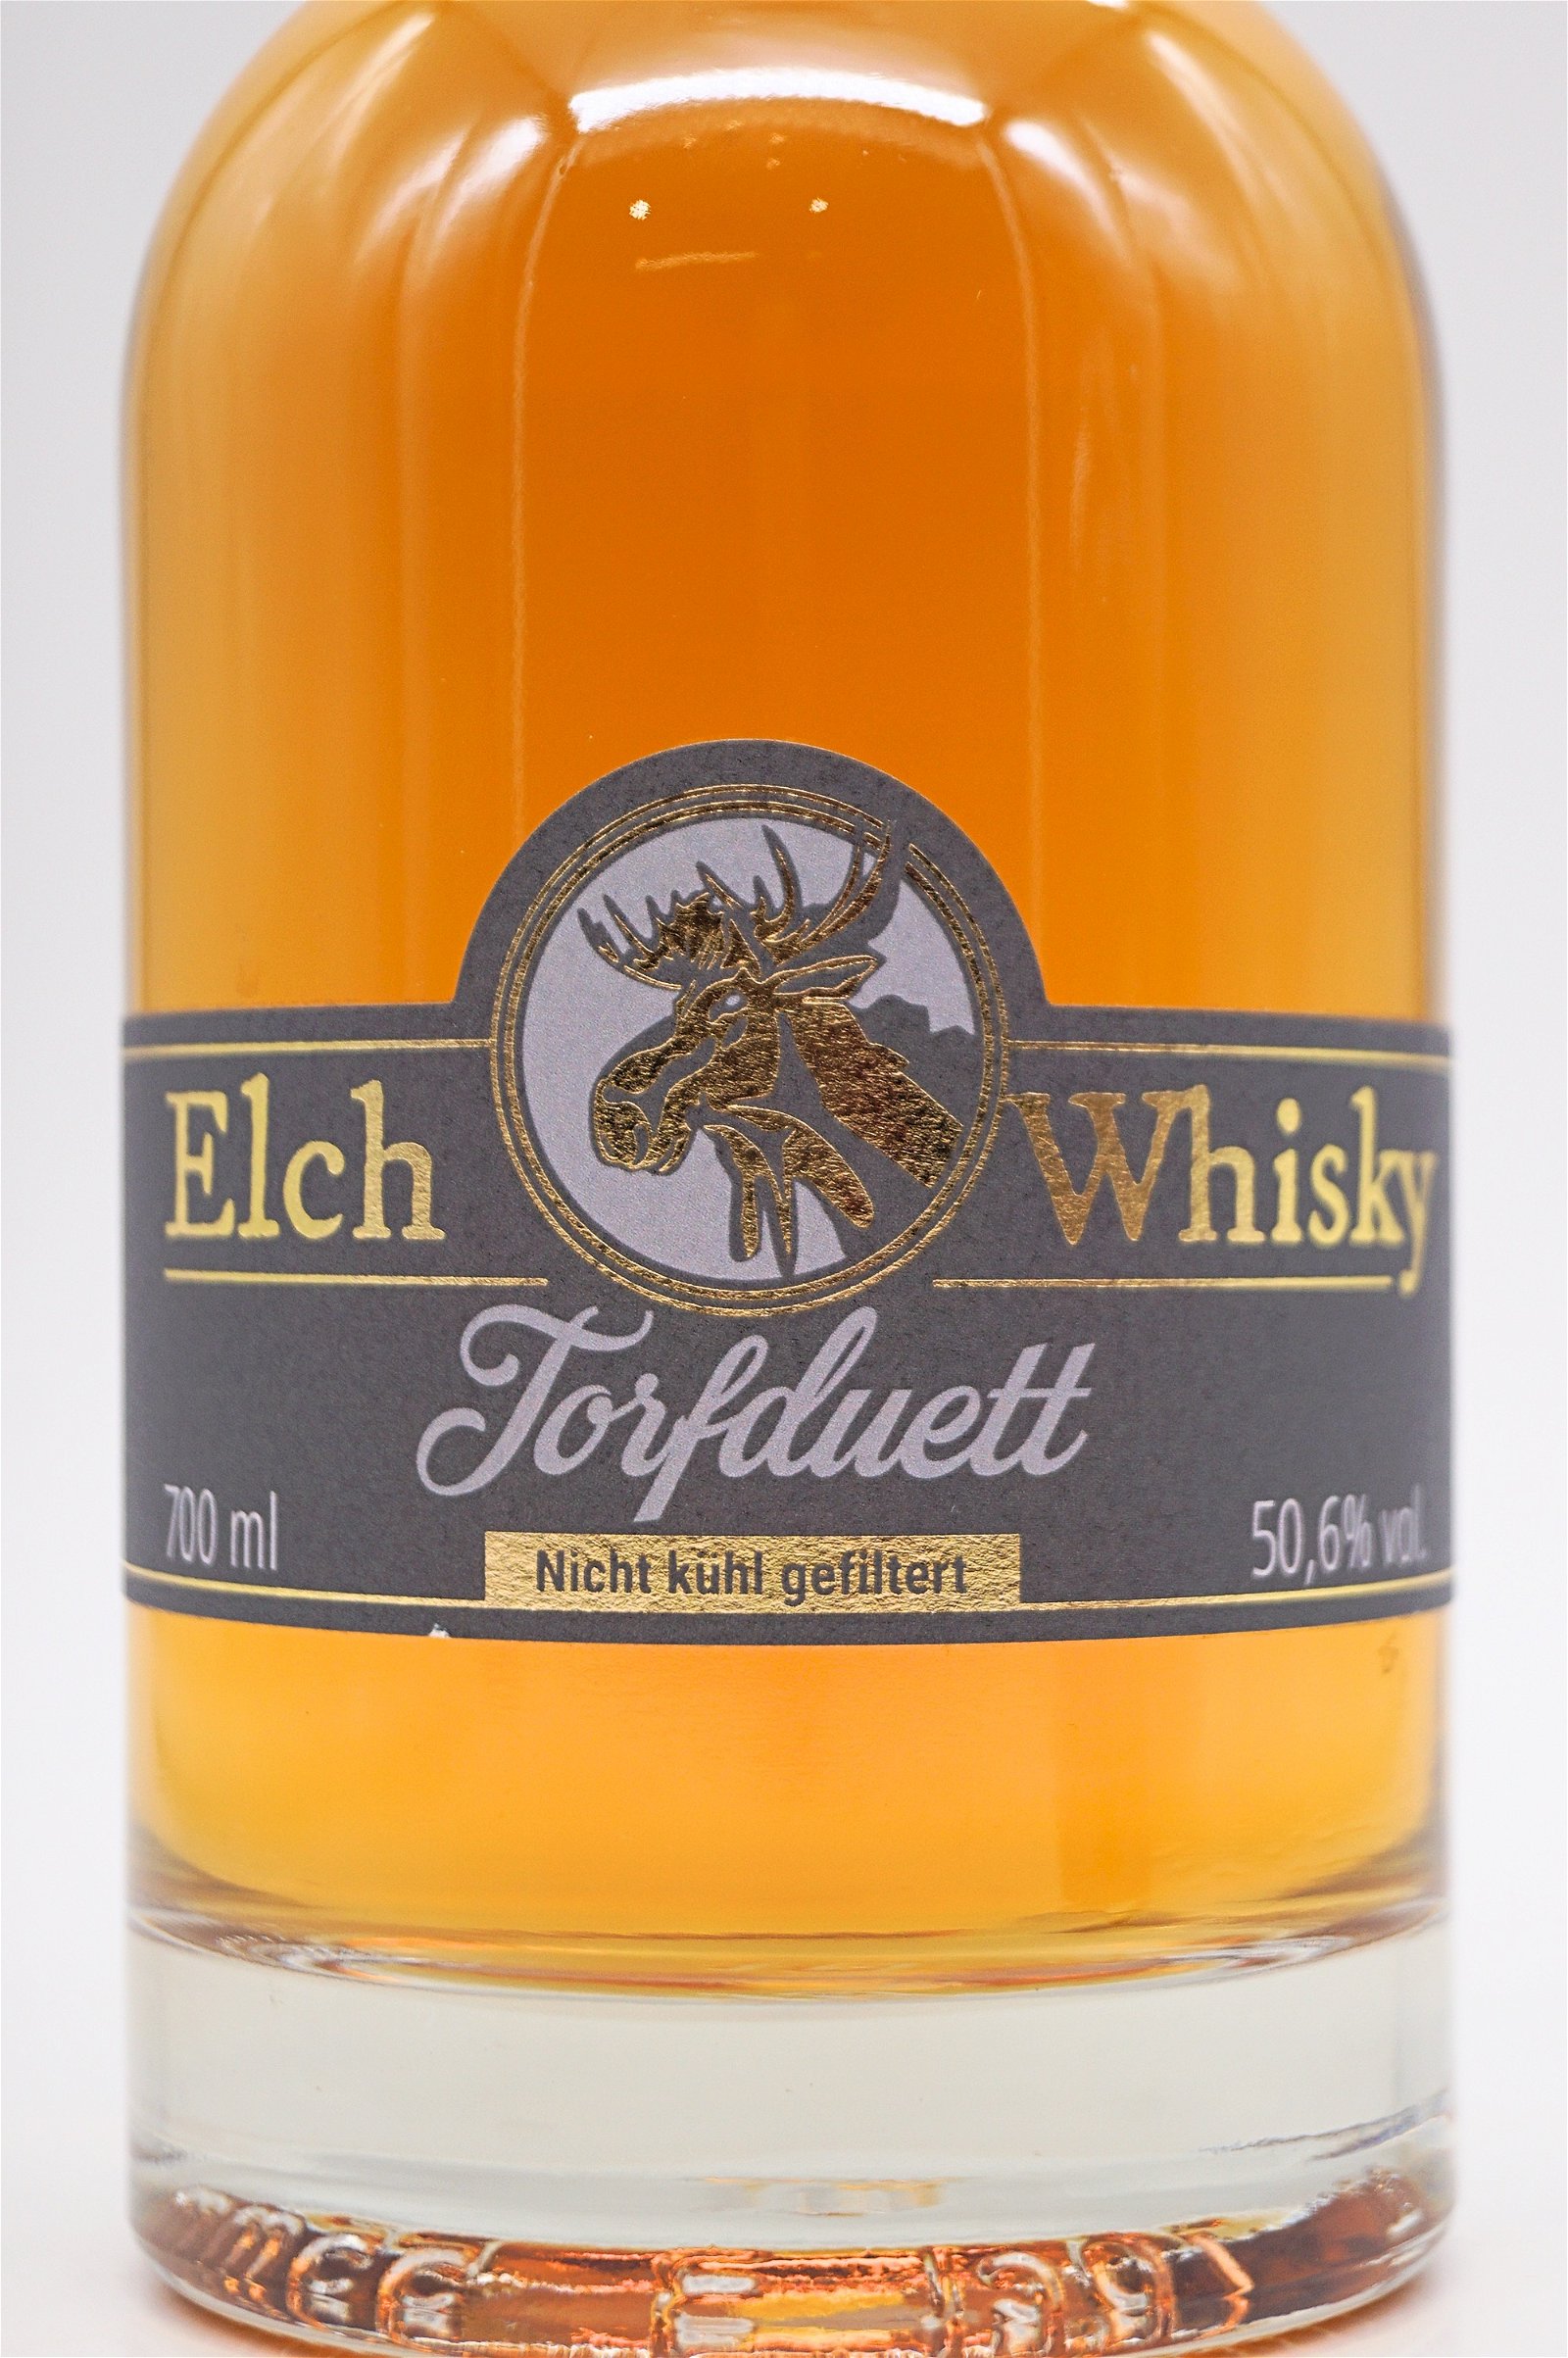 Elch Whisky Torfduett (Auflage 3)